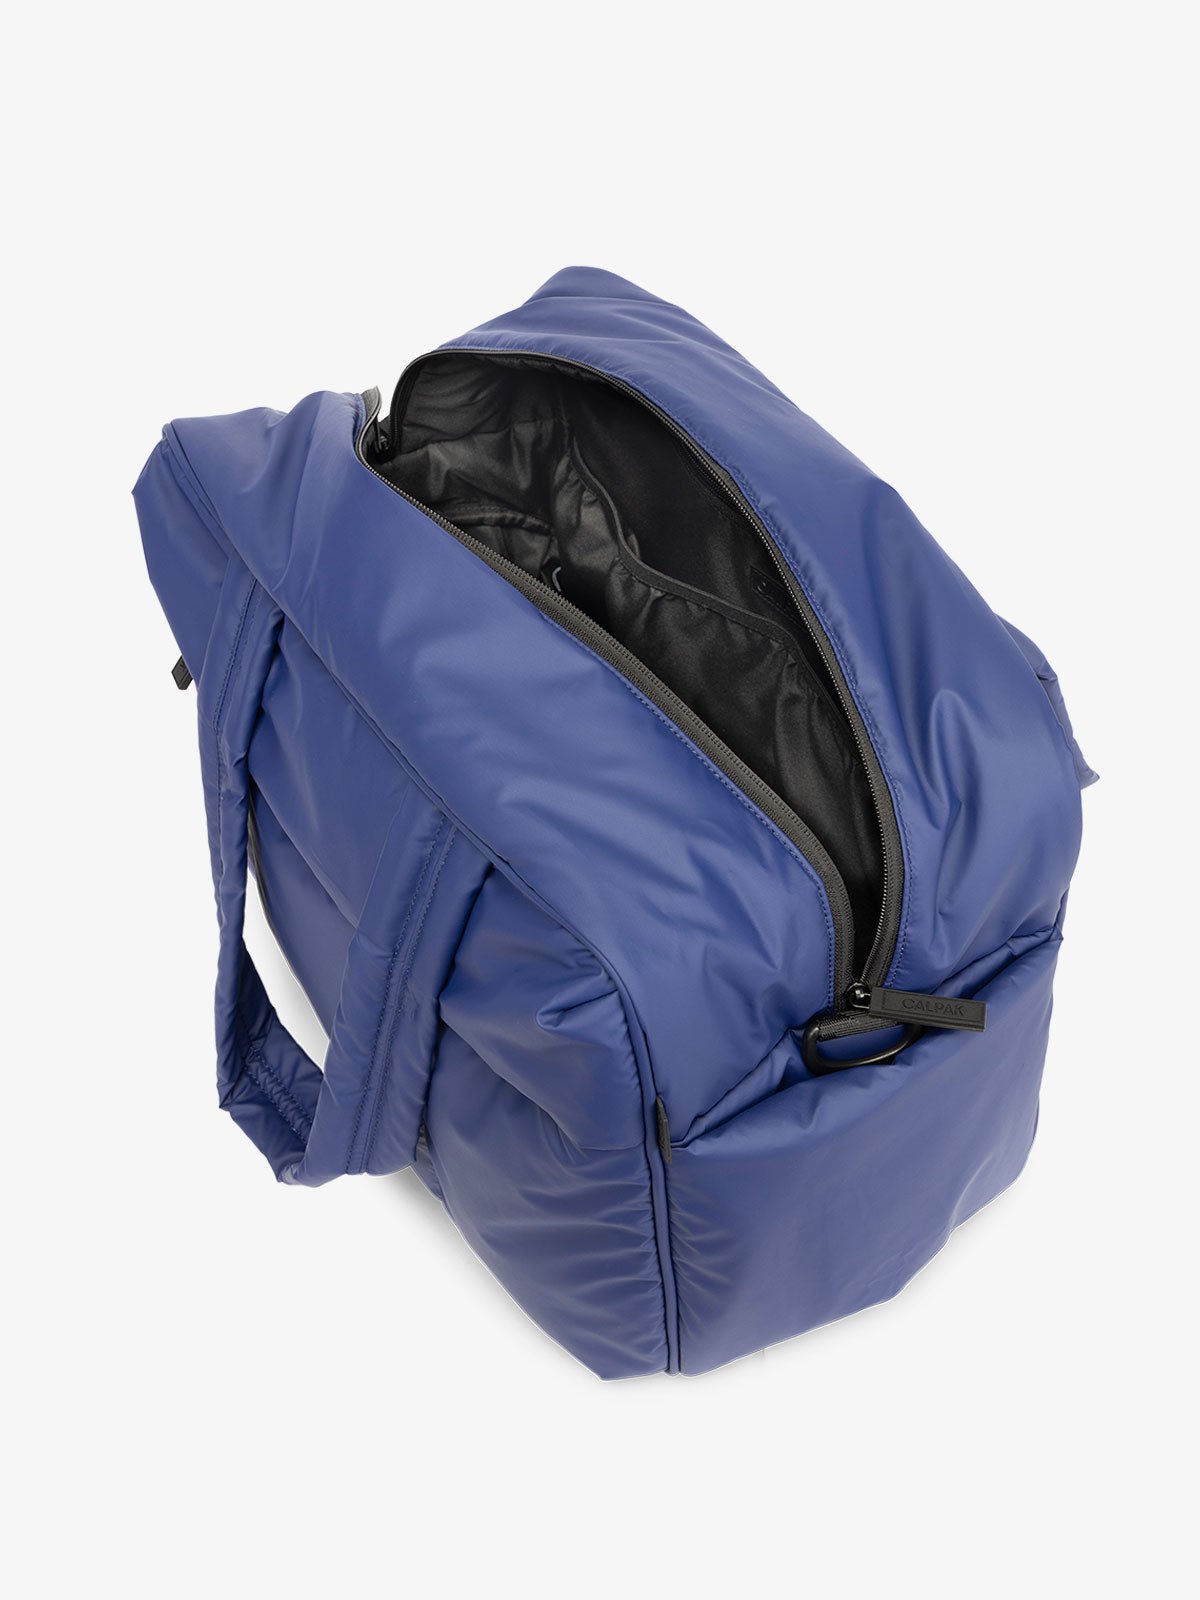 Luka weekender bag in navy blue